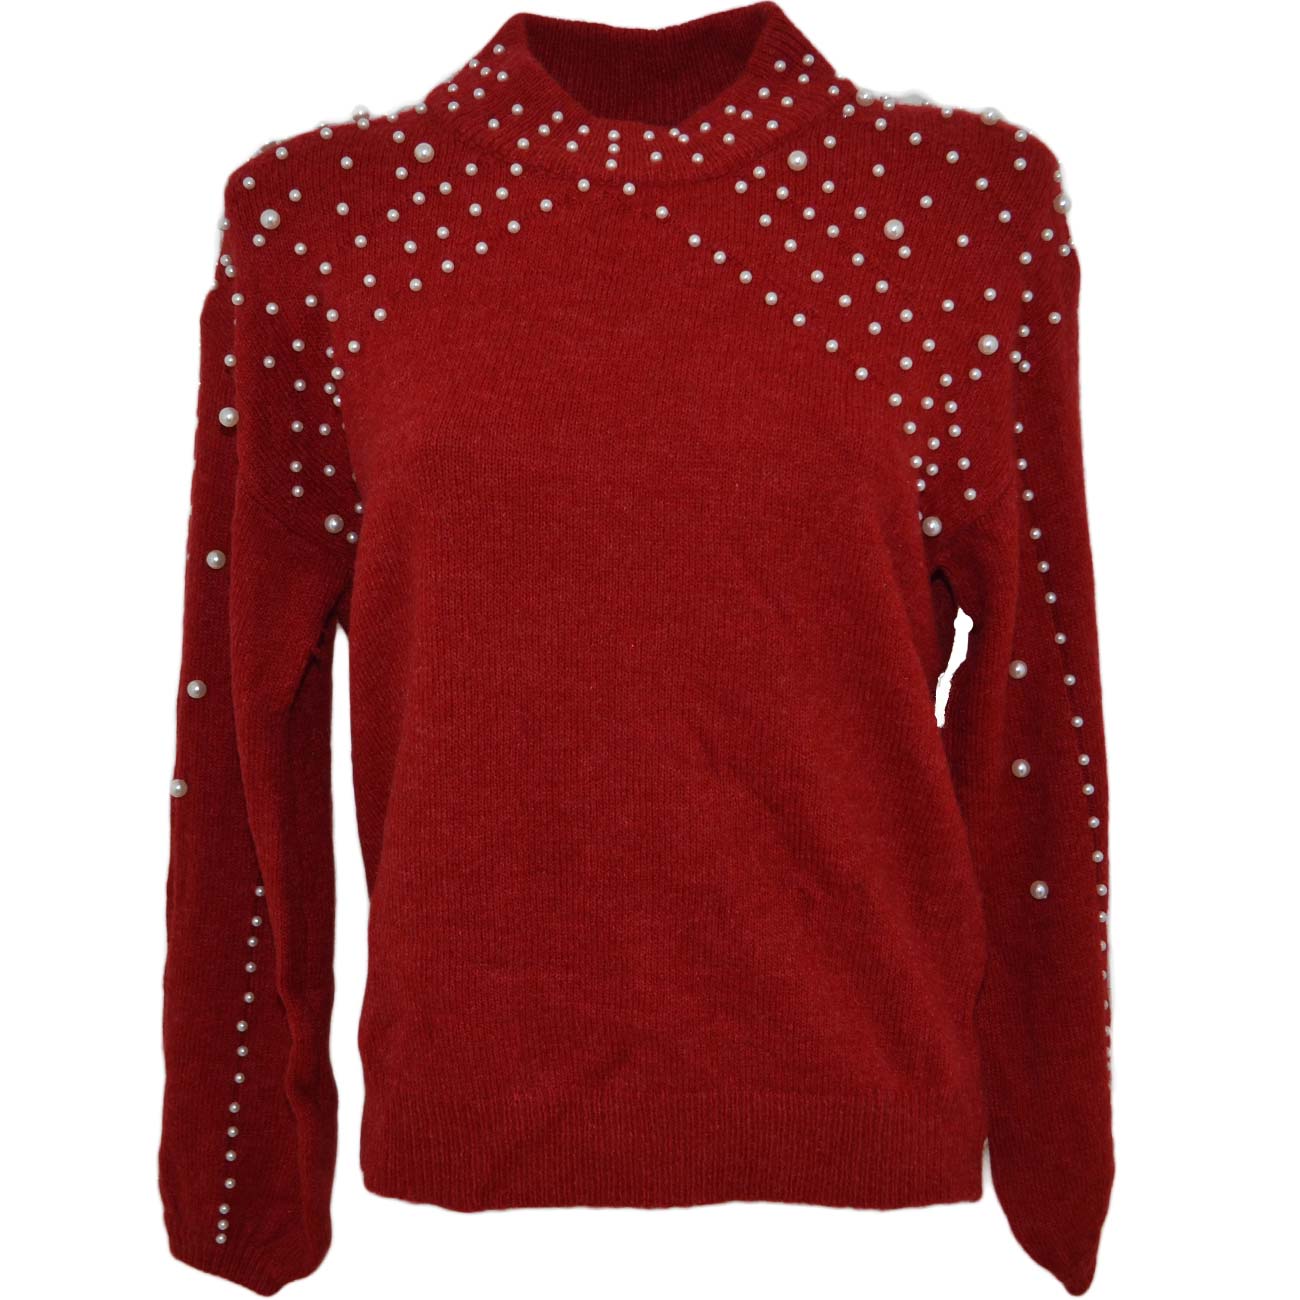  Pull maglione donna rosso con manica a palloncino e perline con filatura stretta bianche moda tendenza